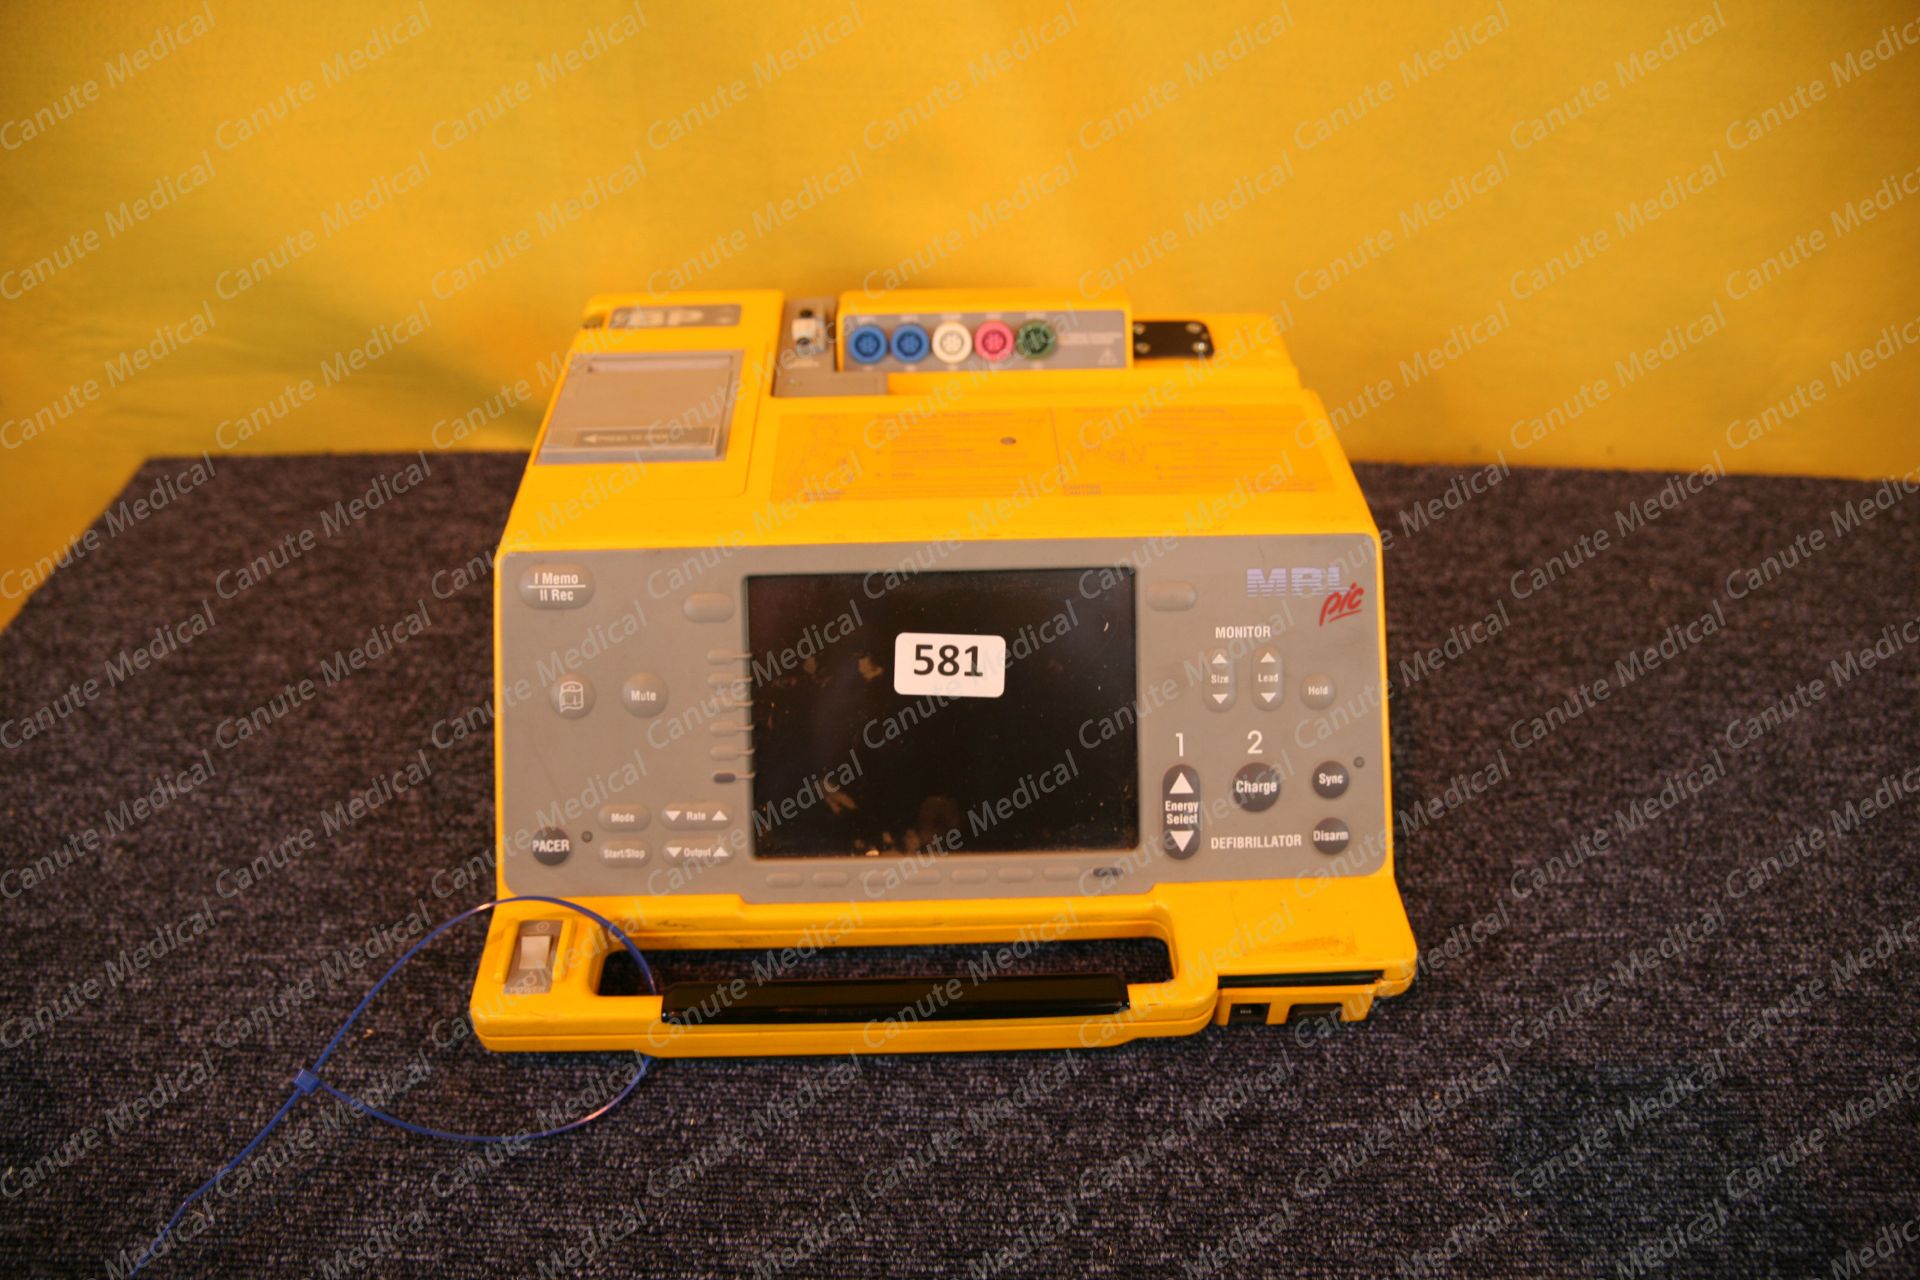 MRL PIC Defibrillator (9692)